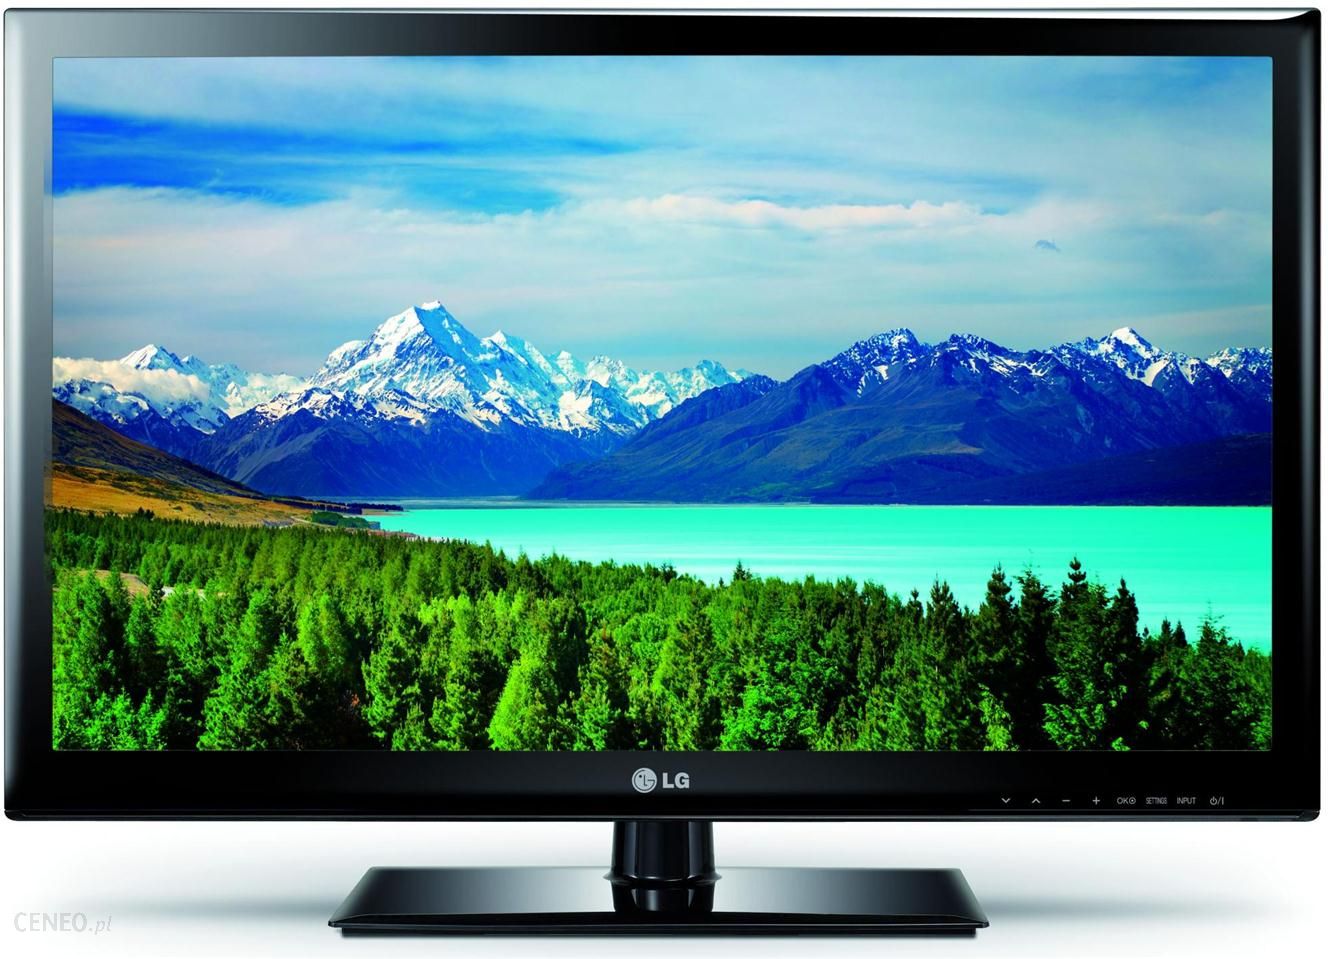 Купить телевизор лучшего качества. Телевизор ЛГ 32 дюйма. LG 32lh519u. Телевизор LG 26 дюймов. LG 32ls3400.